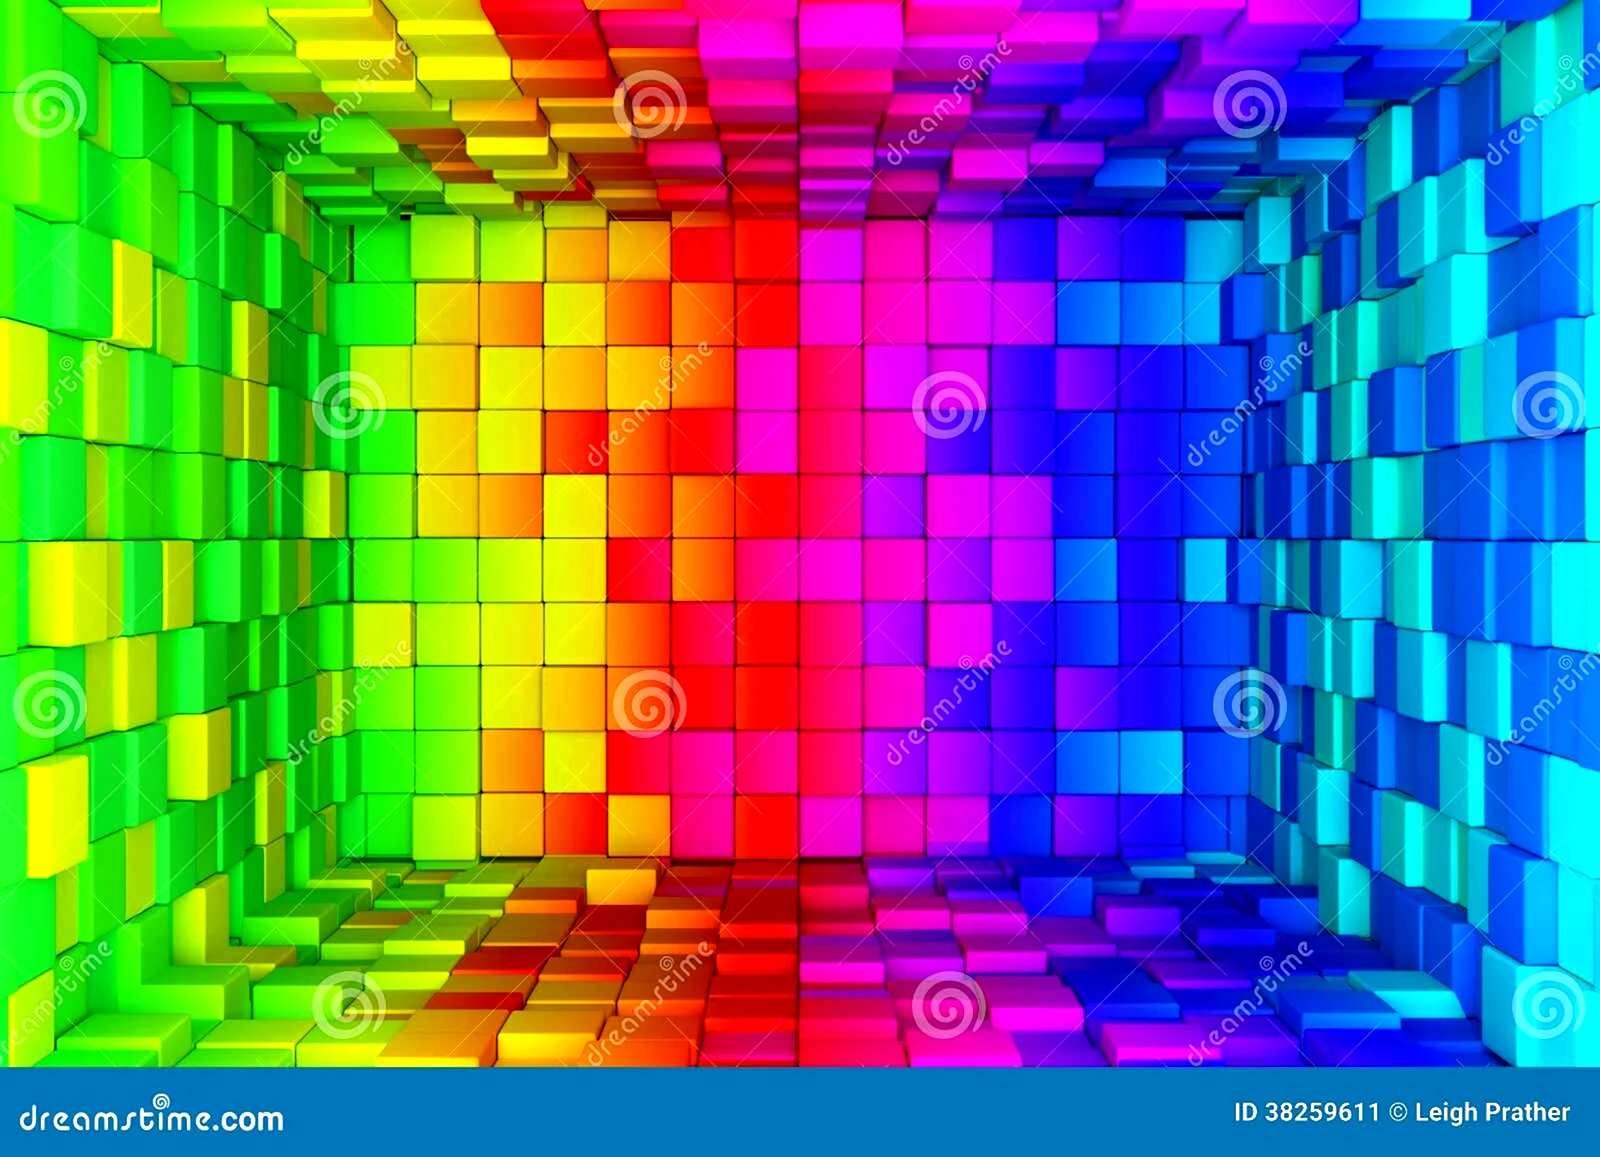 Радужные кубики фон